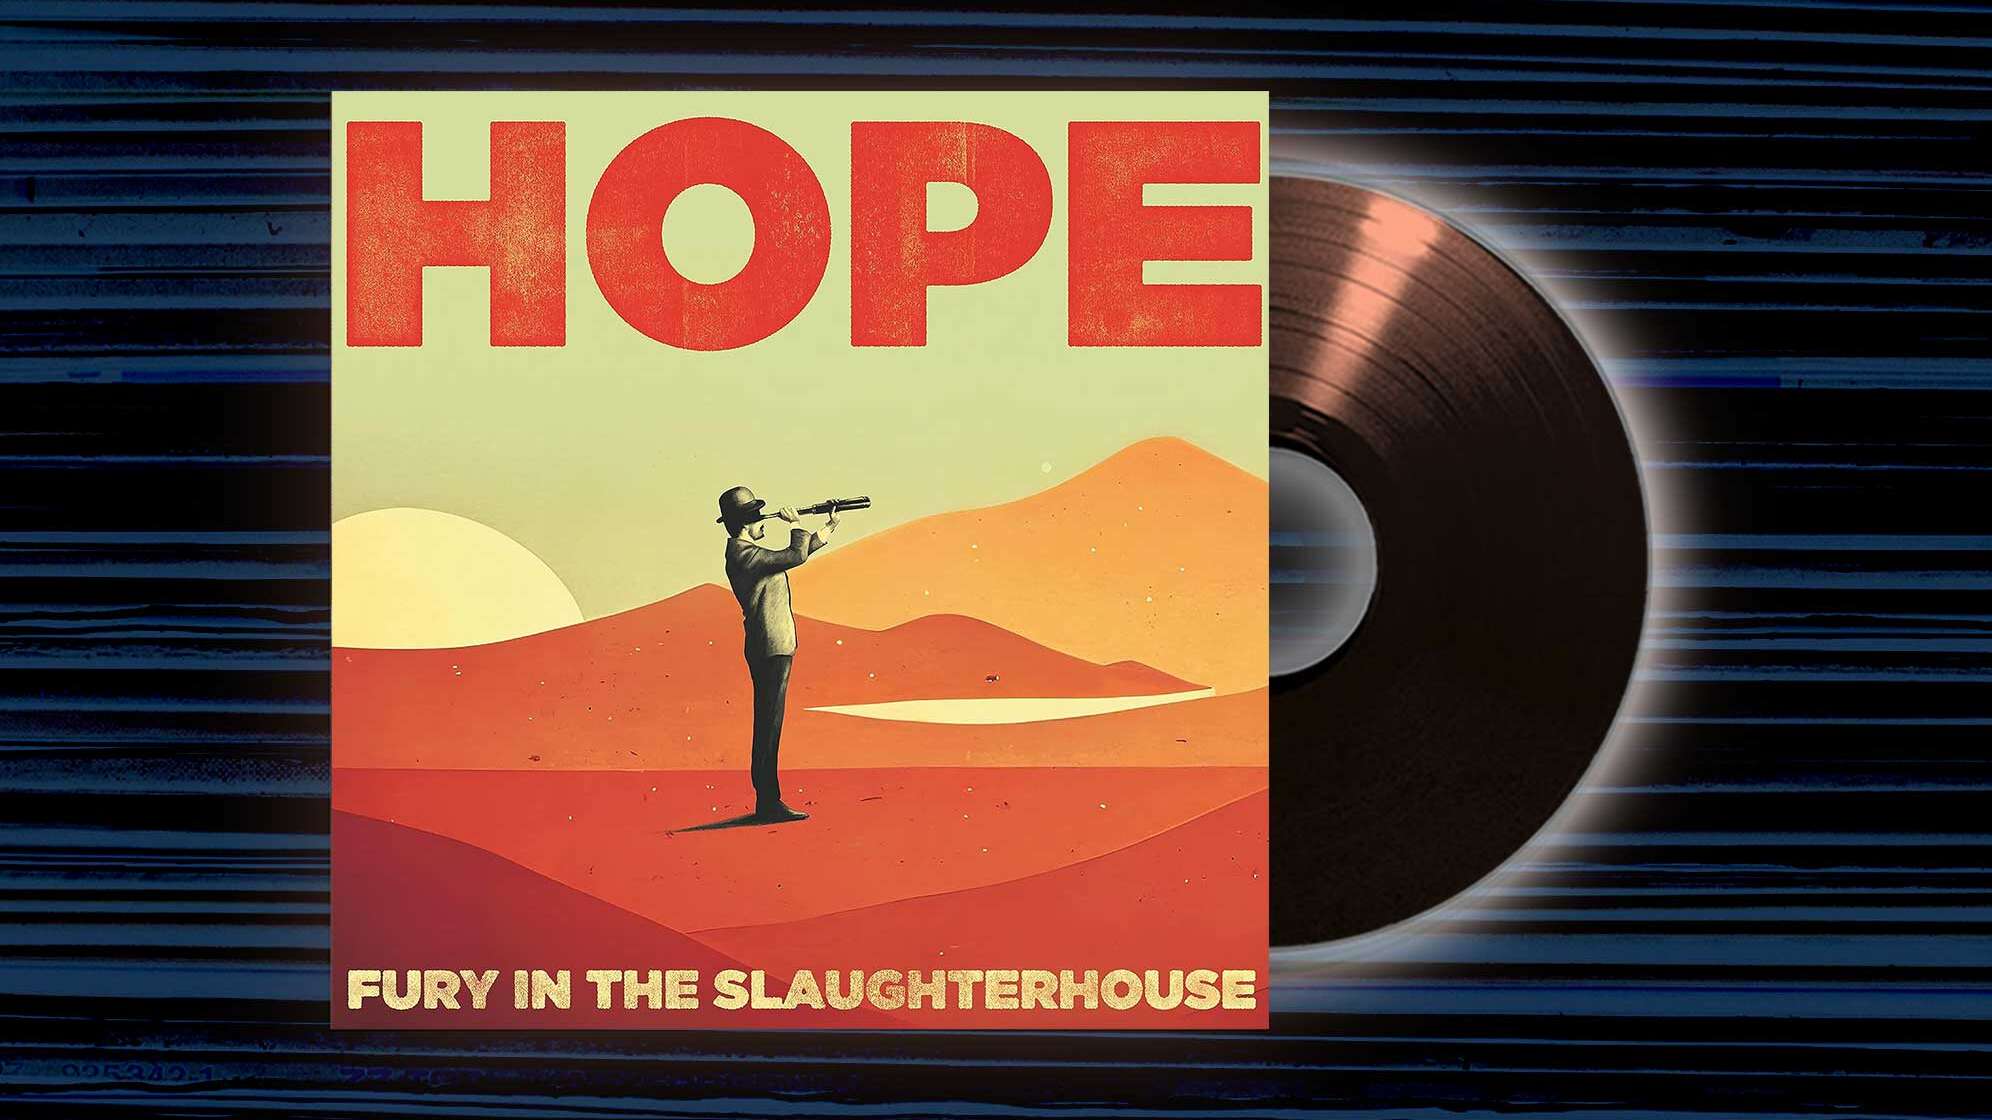 Das Cover vom Album "Hope" mit einem Mann, der ins Fernrohr schaut